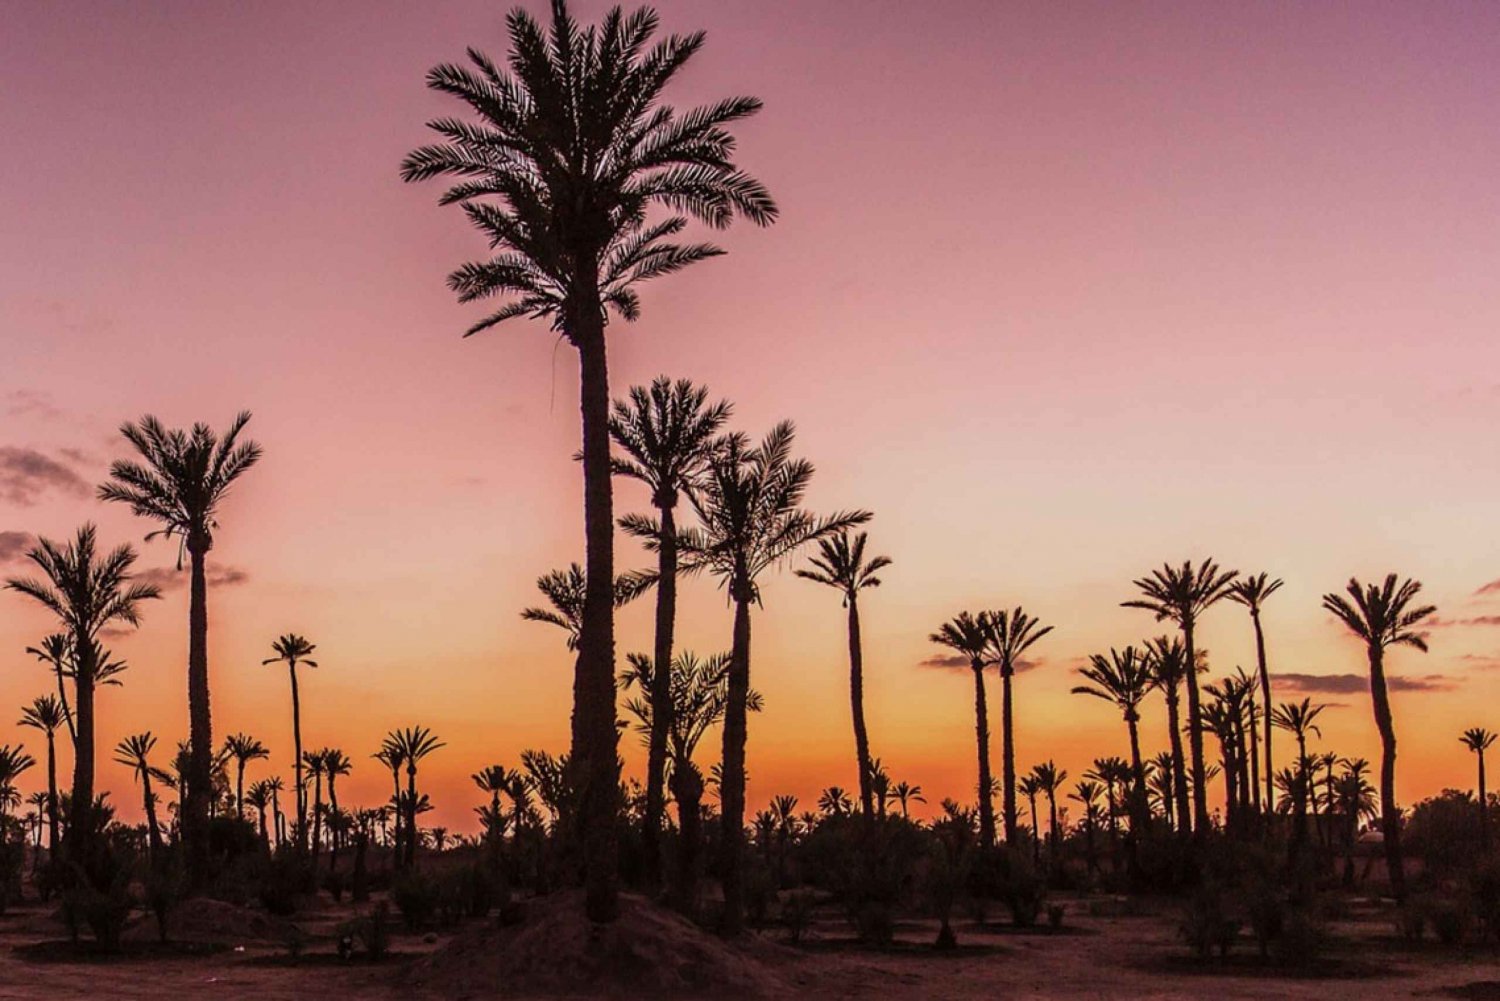 Palmeraie de Marrakech : balade à dos de chameau au crépuscule